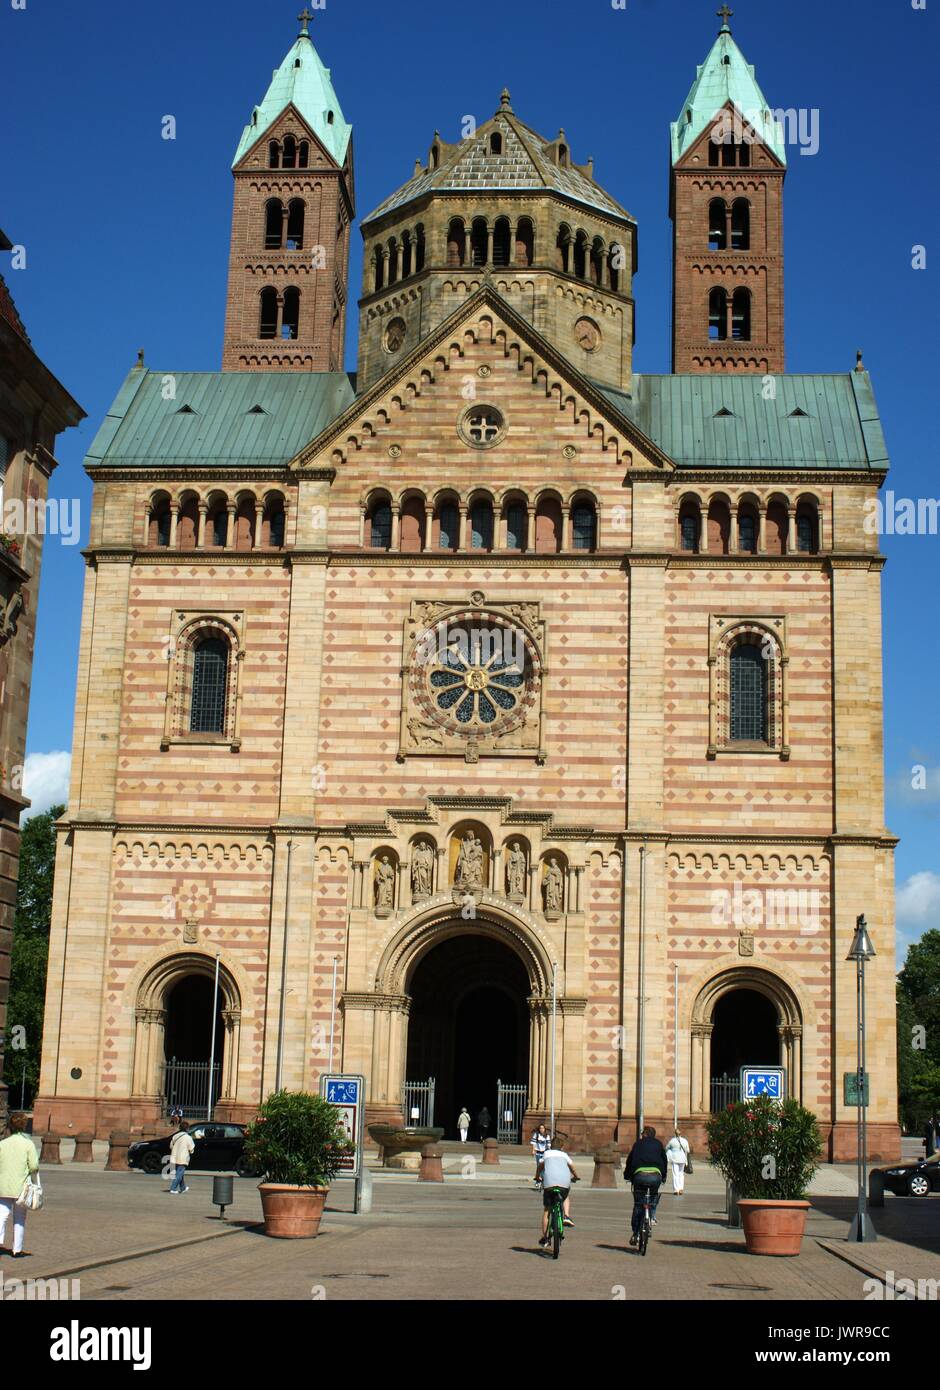 Dom zu Speyer, Speyer, Deutschland Stockfoto